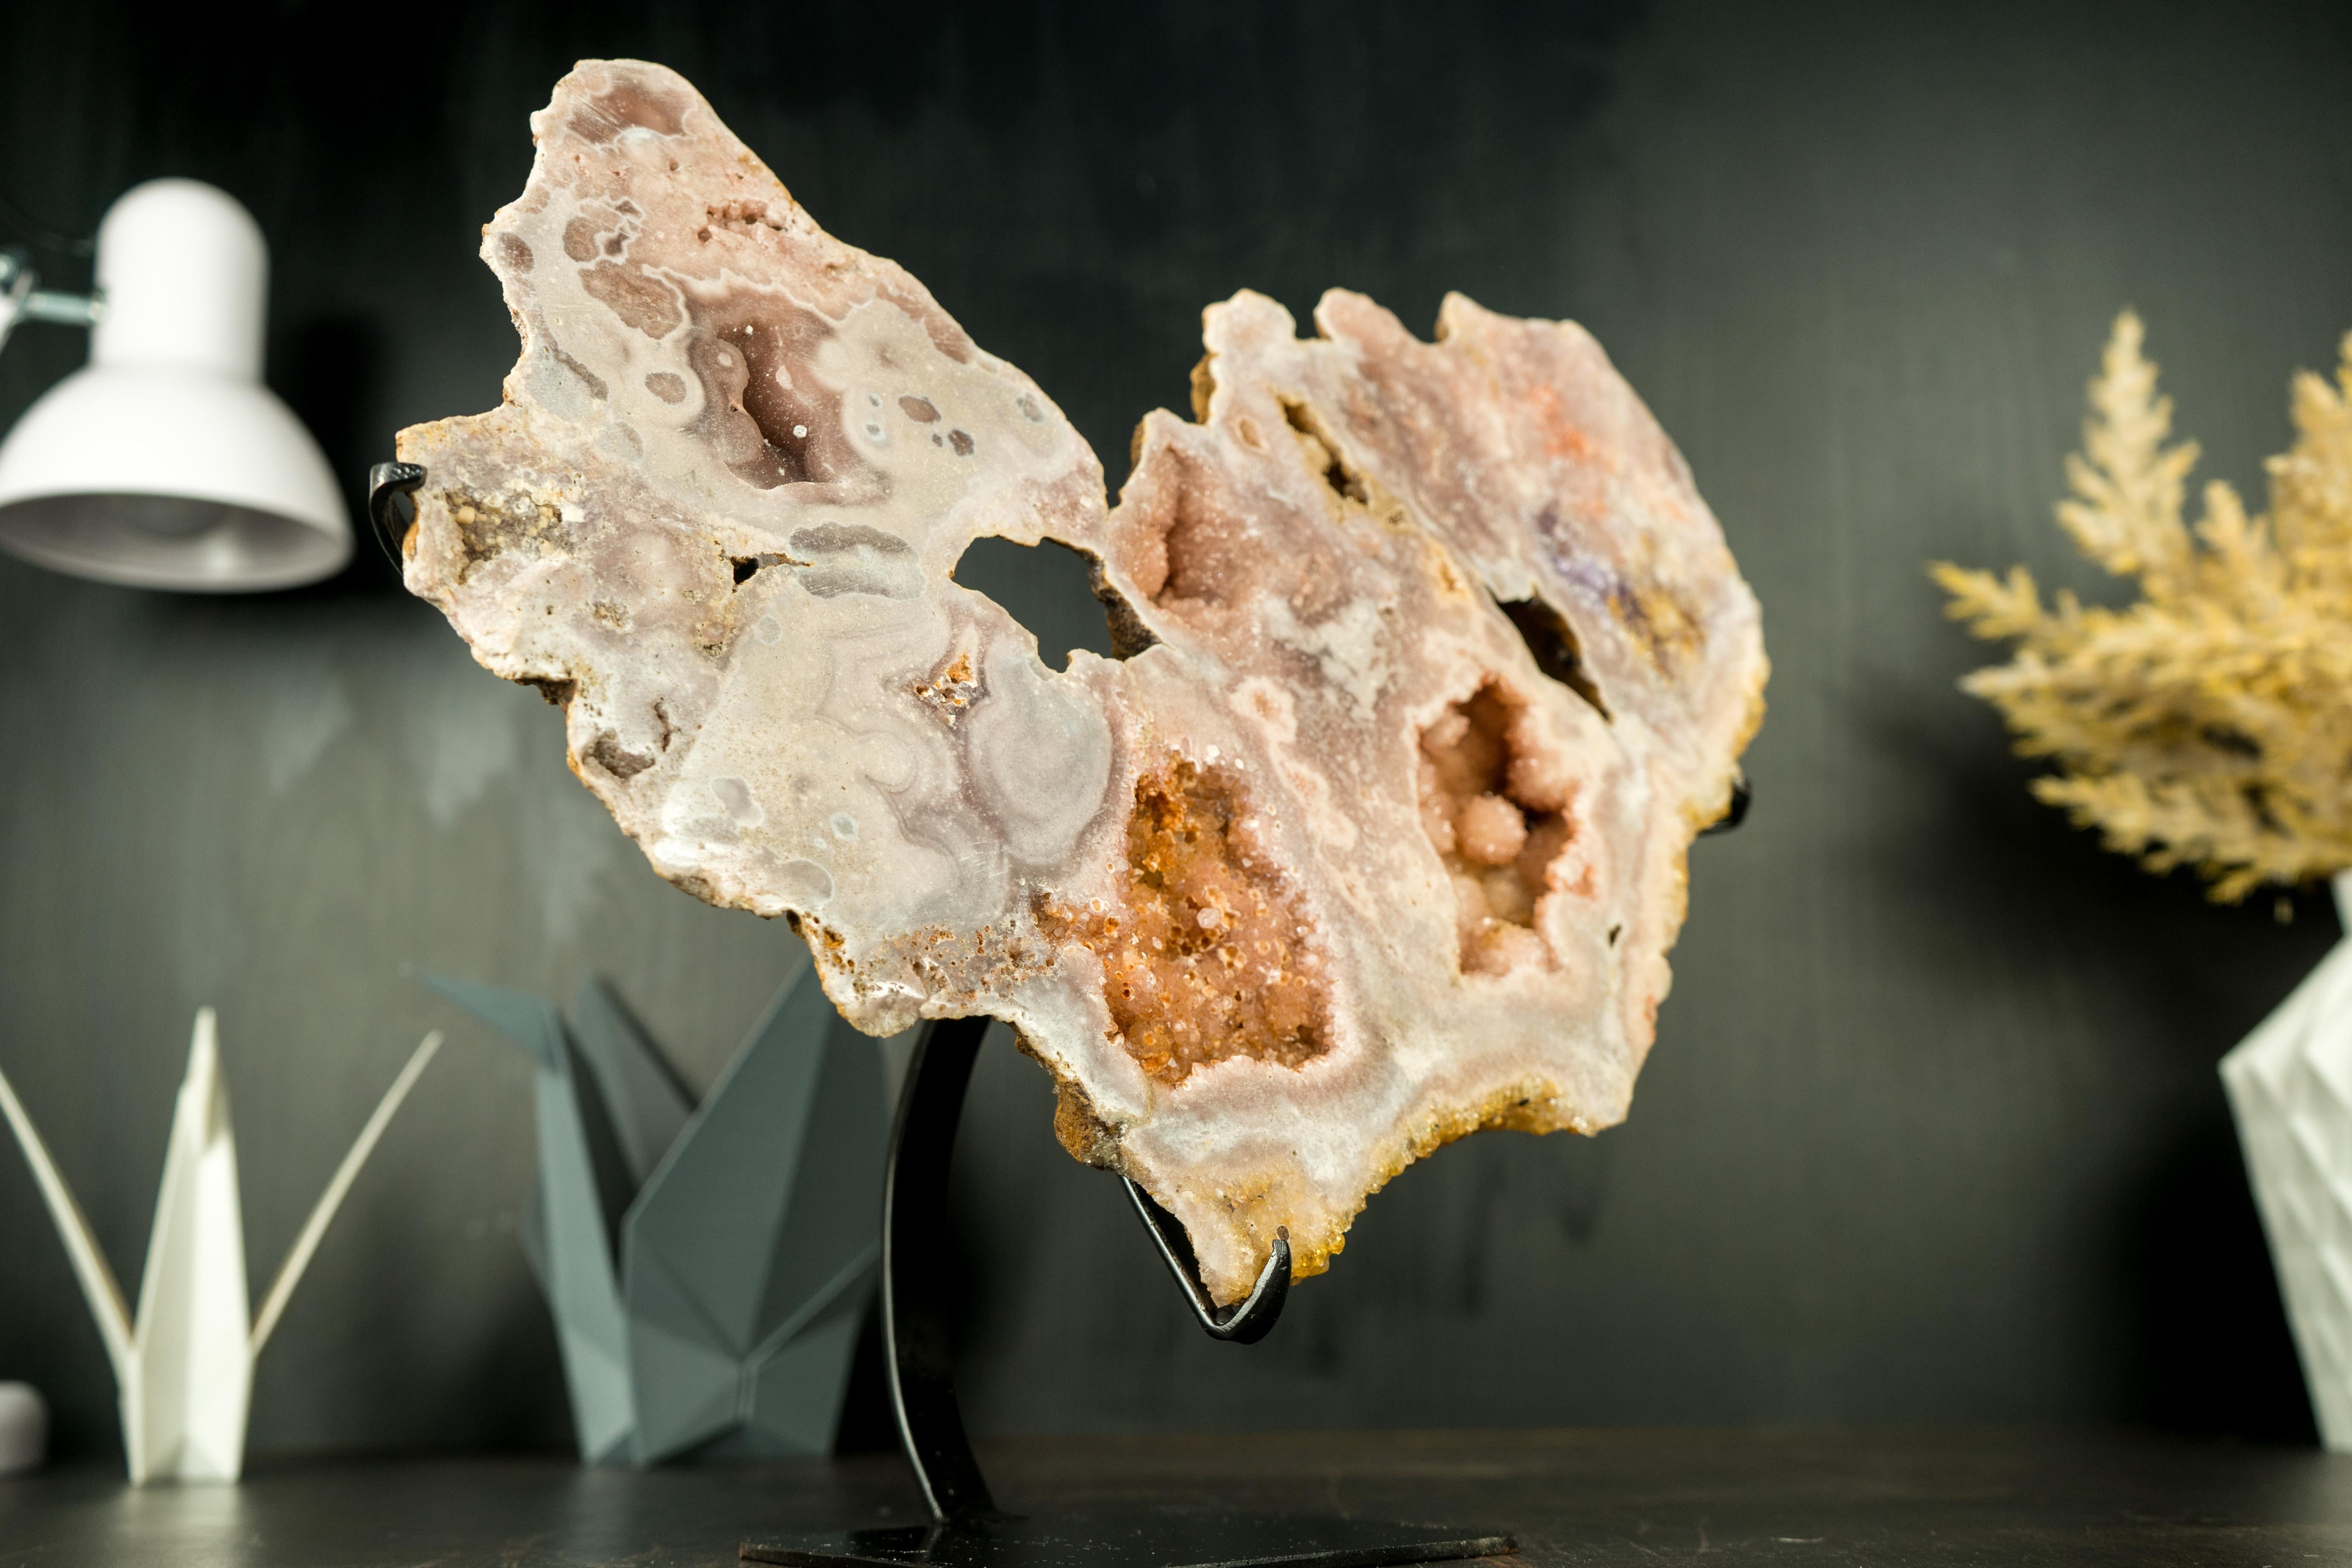 Hochwertige rosa Amethyst-Geodenscheibe mit Botroydal-Blüten und funkelndem Druzy

▫️Description

Eine rosafarbene Amethystgeodenscheibe weist seltene Merkmale auf, die durch ihre skulpturale Formation hervorgehoben werden. Mit seiner herrlichen